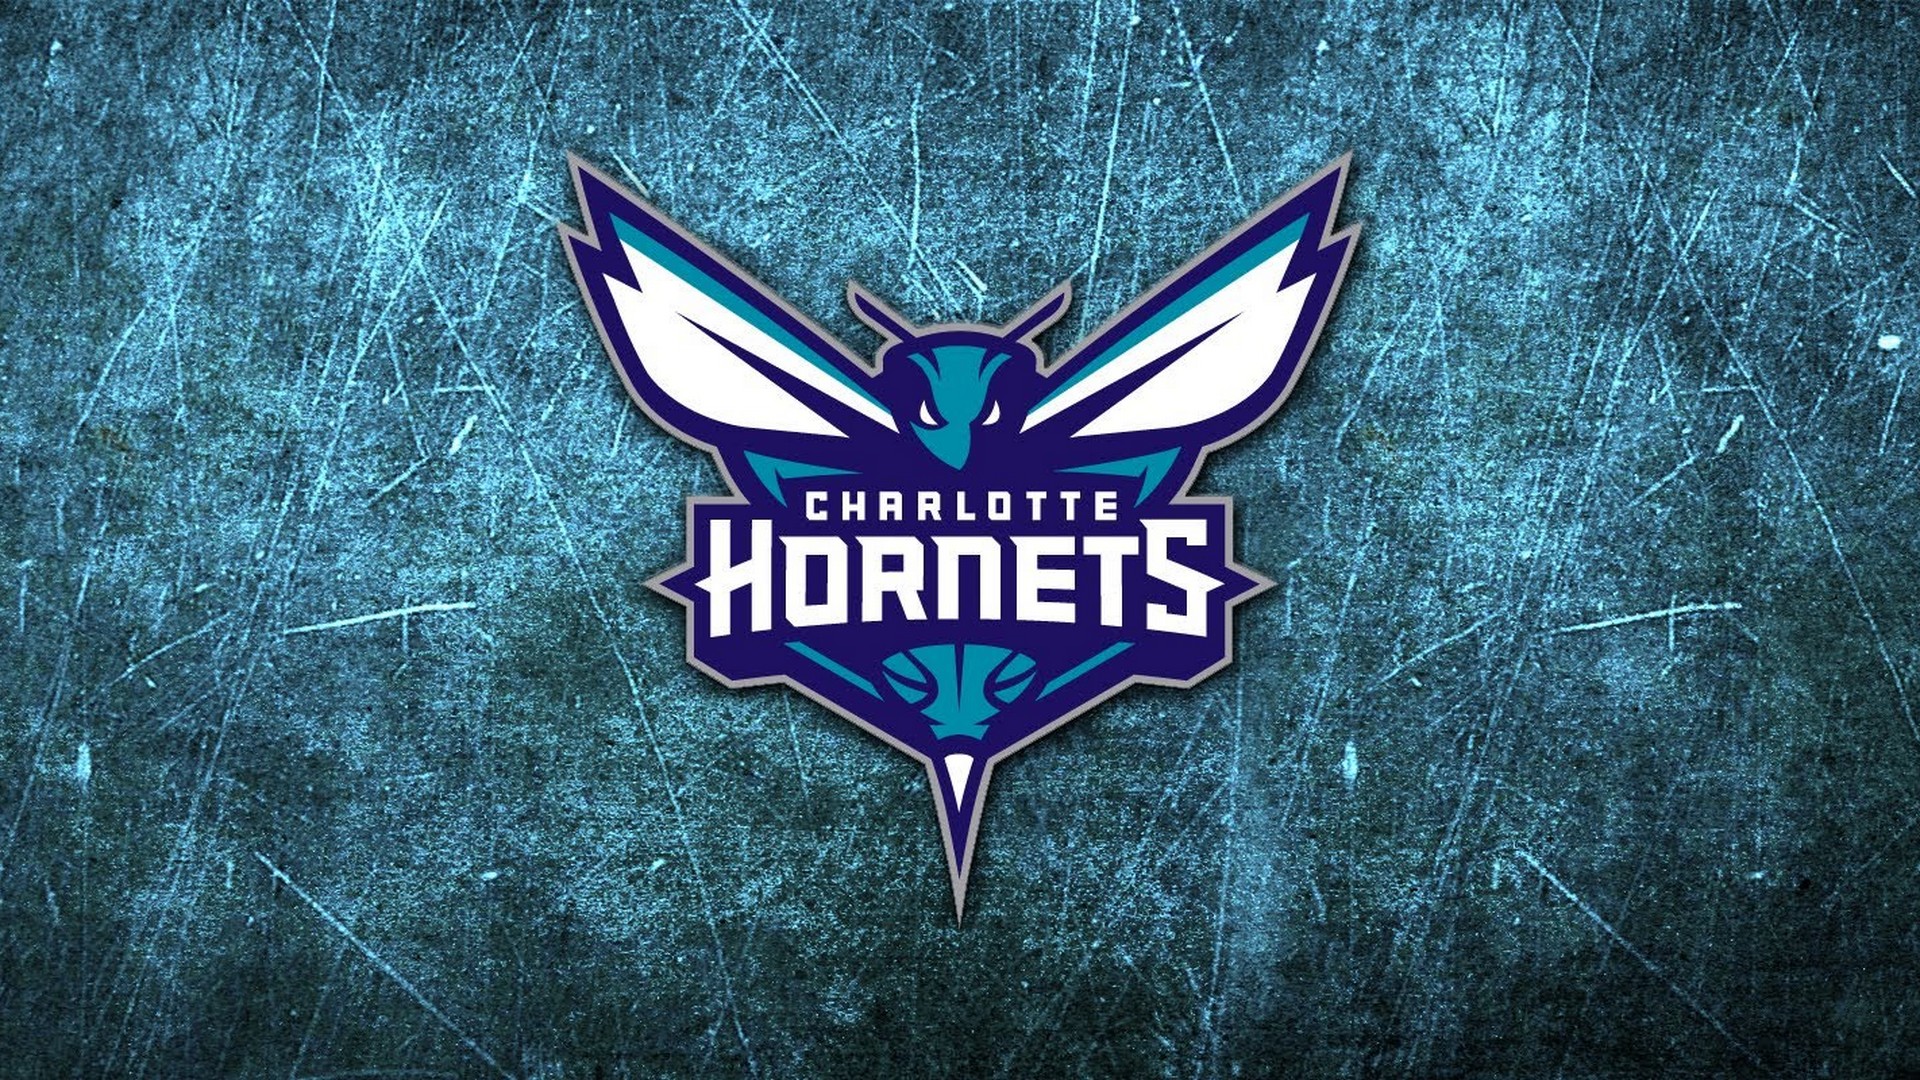 Charlotte Hornets Wallpaper Hd - Charlotte Hornets - HD Wallpaper 